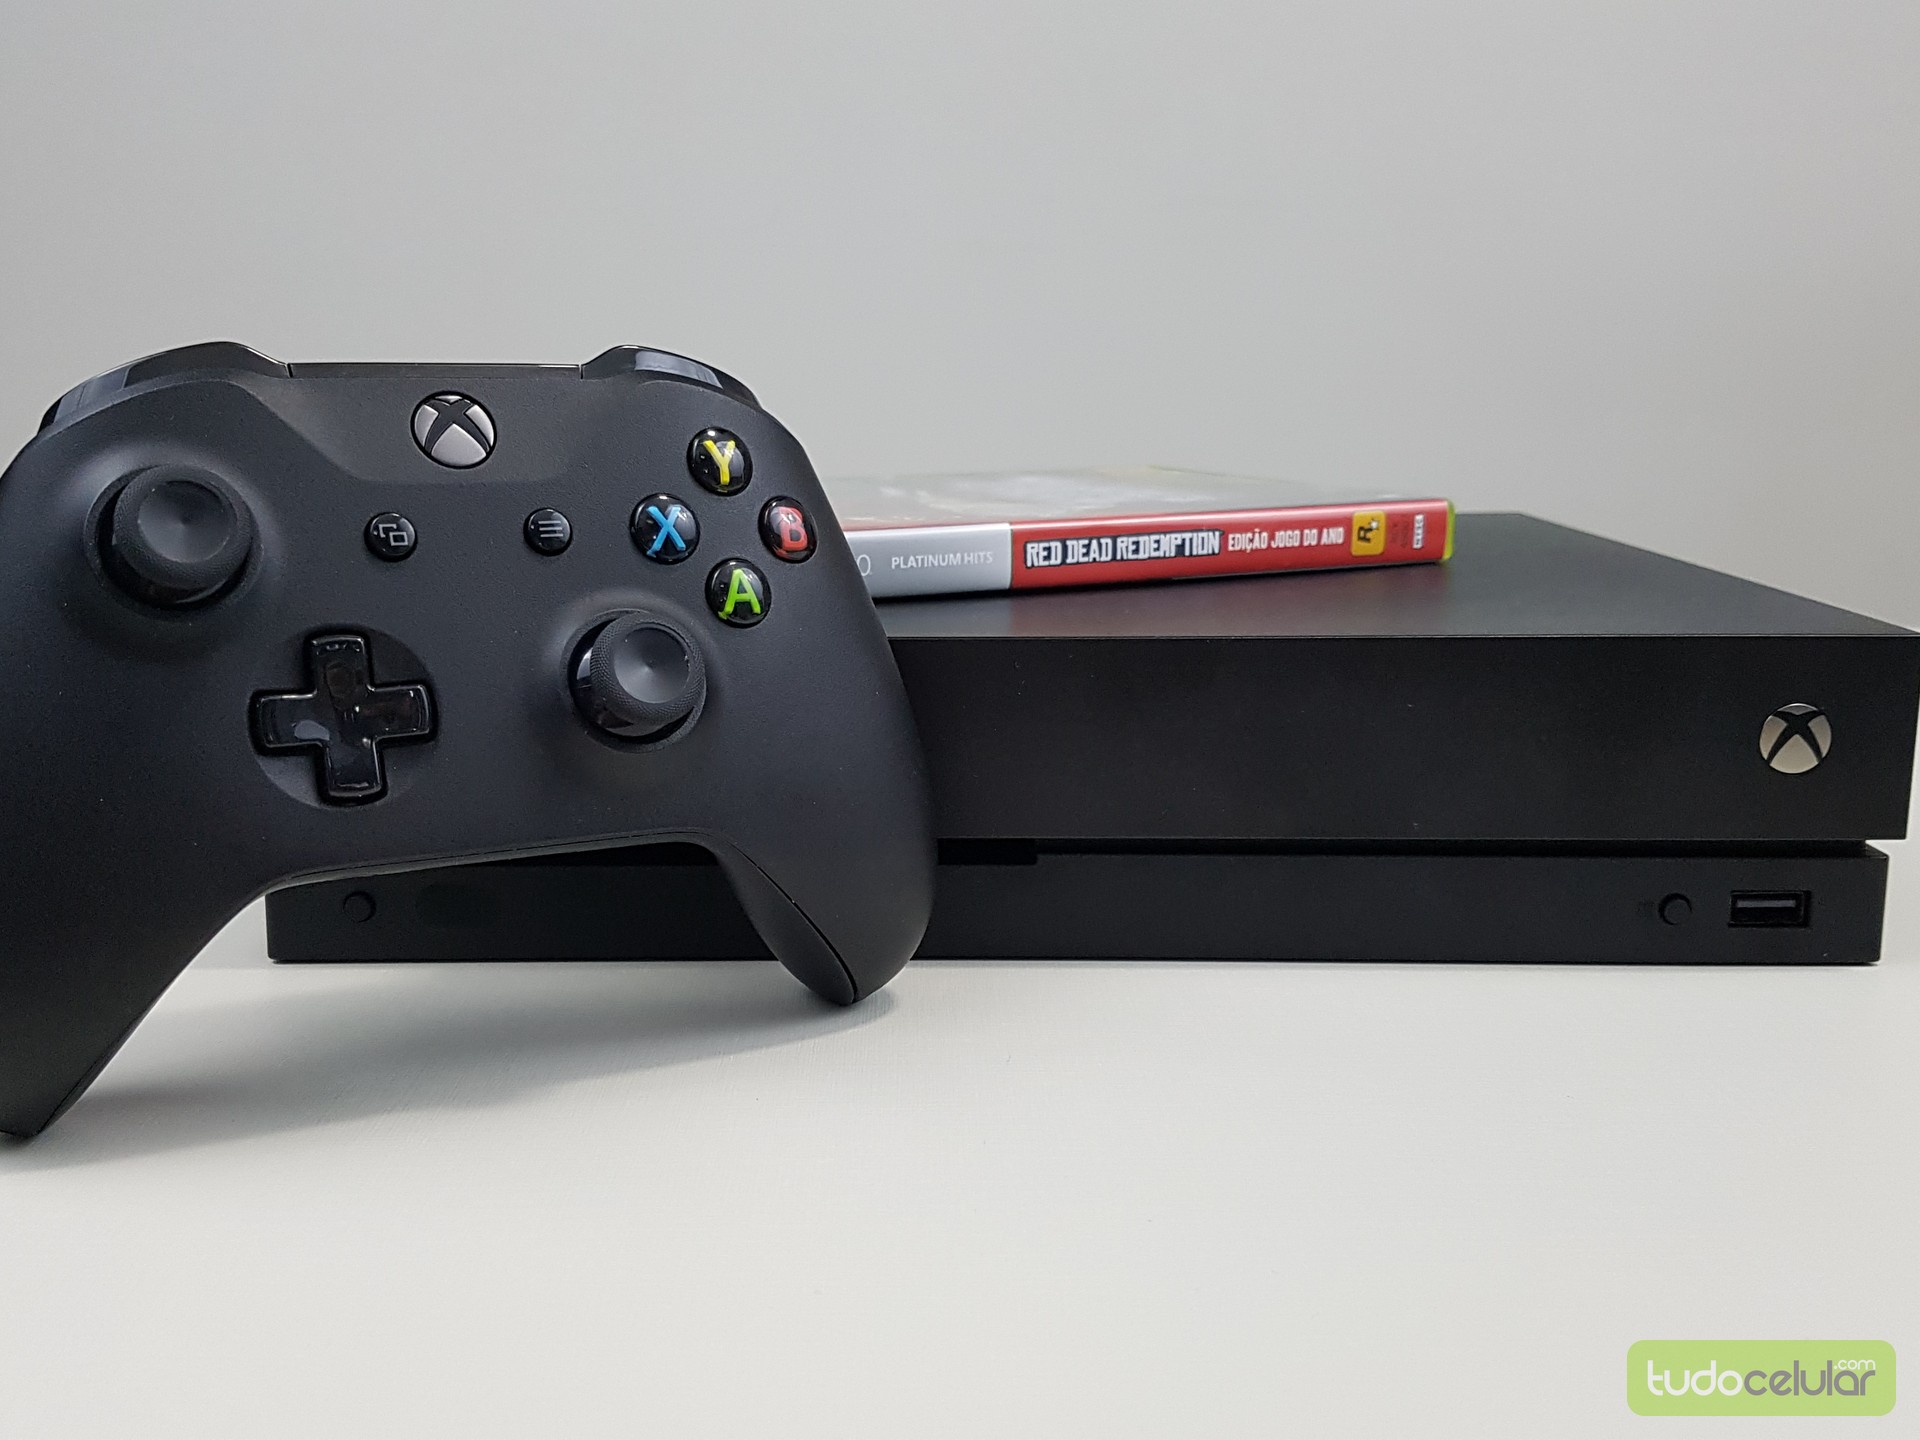 Novos Usuários) 3 Primeiros Meses de Xbox Game Pass por em Promoção no  Oferta Esperta